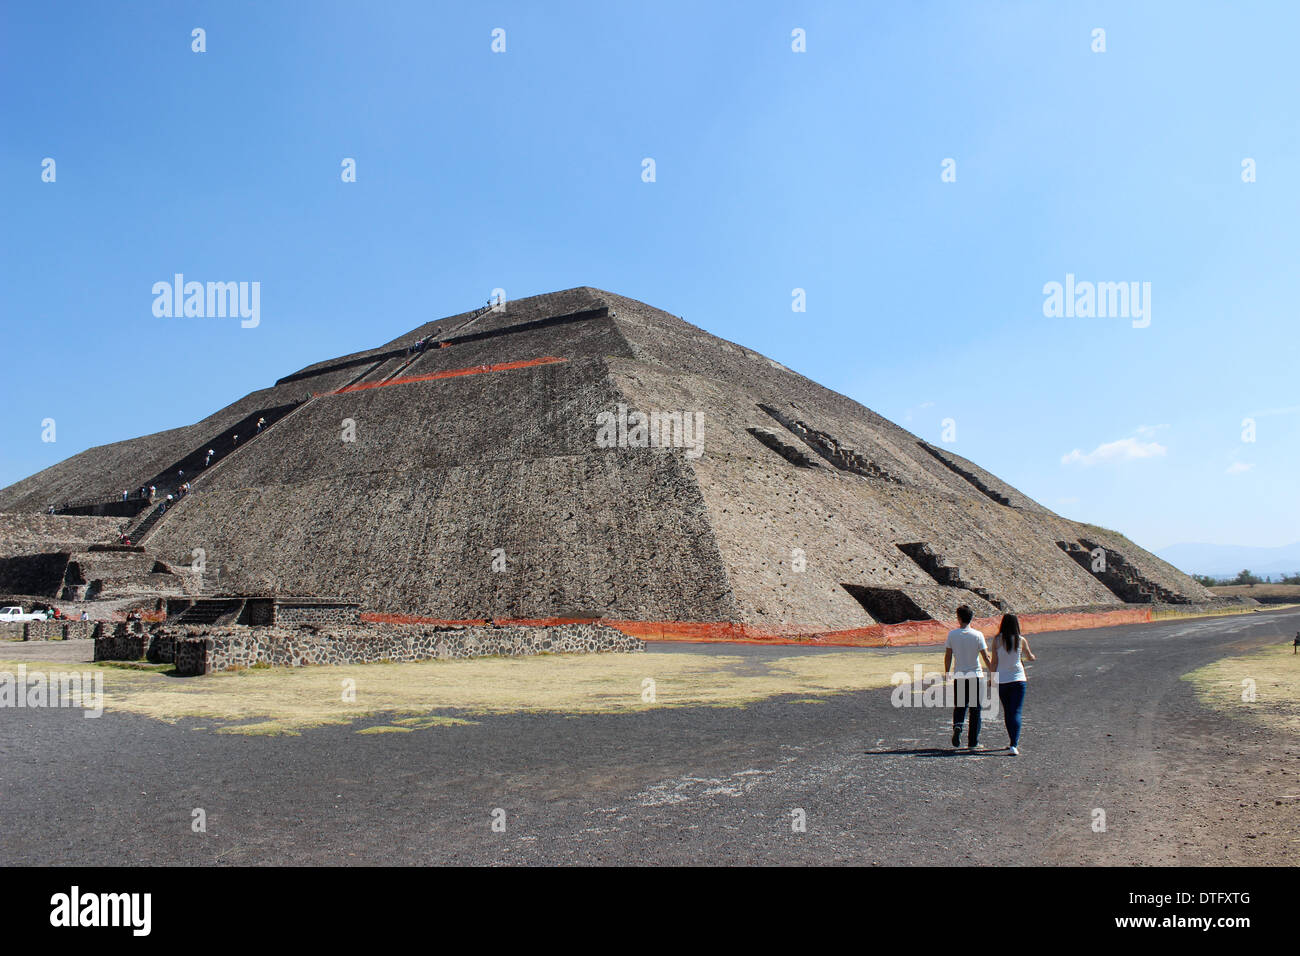 La Pyramide du soleil, Teotihuacan, Mexique, la civilisation aztèque Banque D'Images